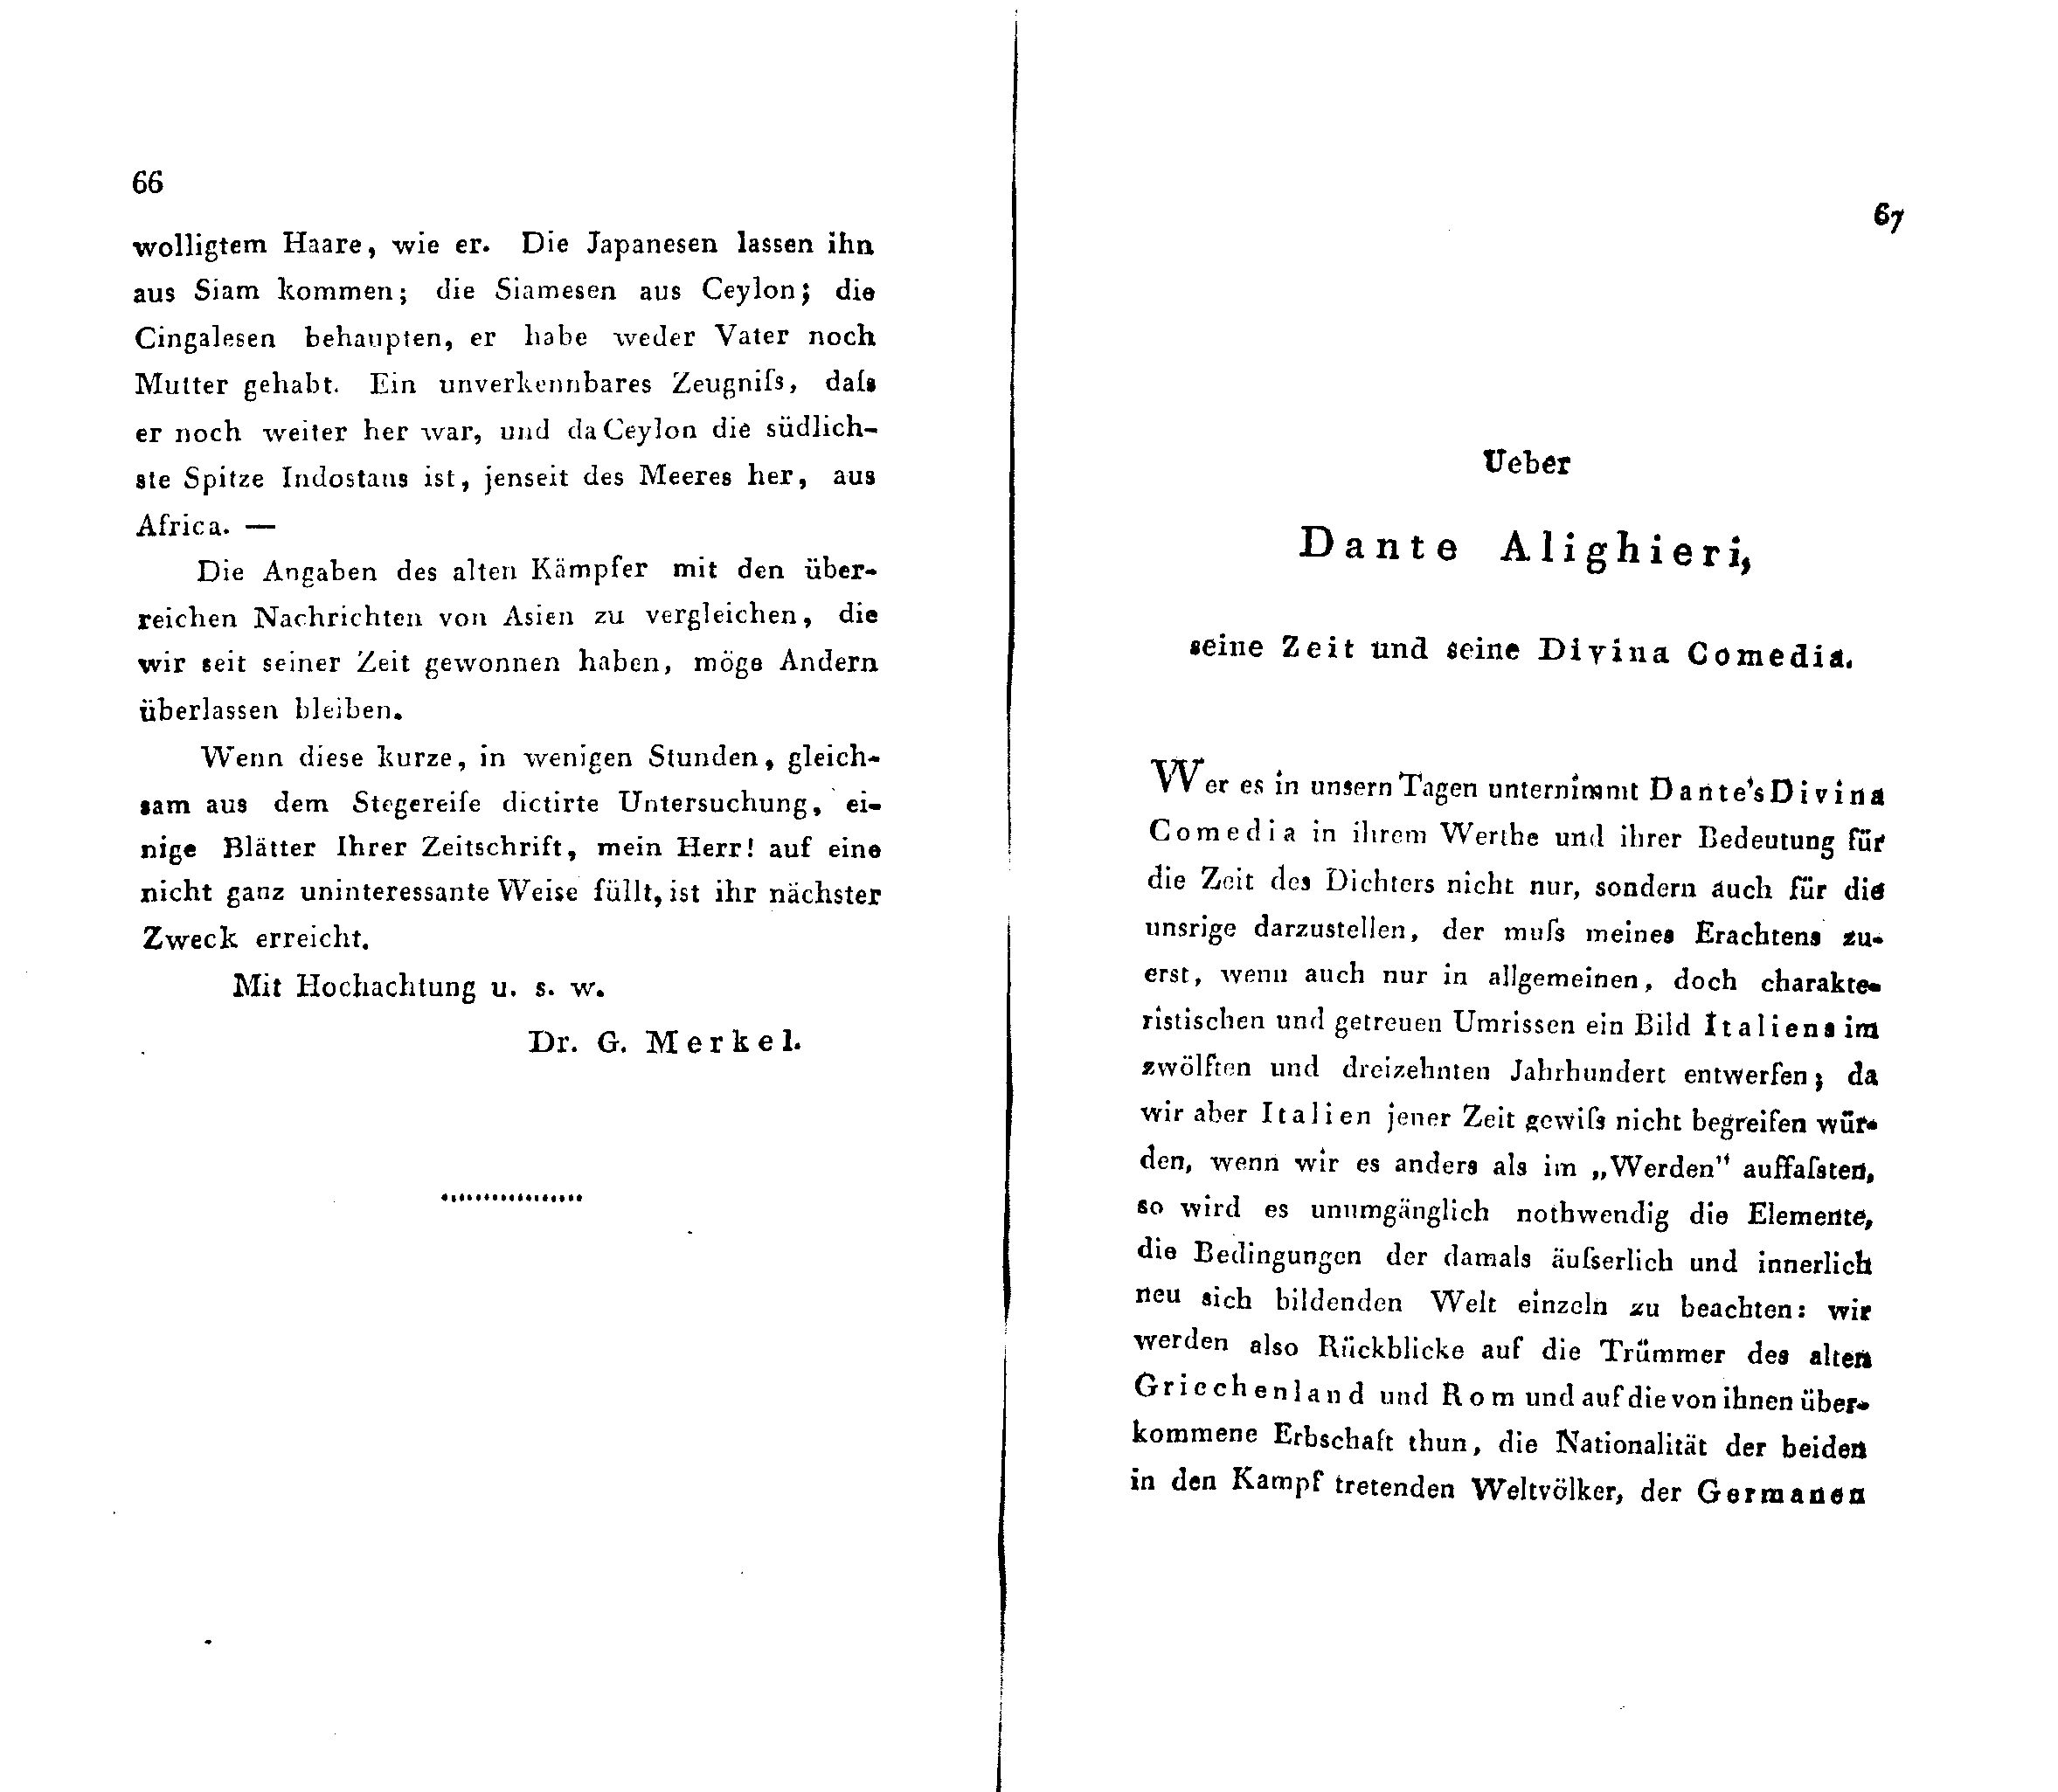 Ueber Dante Alighieri, seine Zeit und seine Divina Comedia [1] (1824) | 1. (66-67) Основной текст